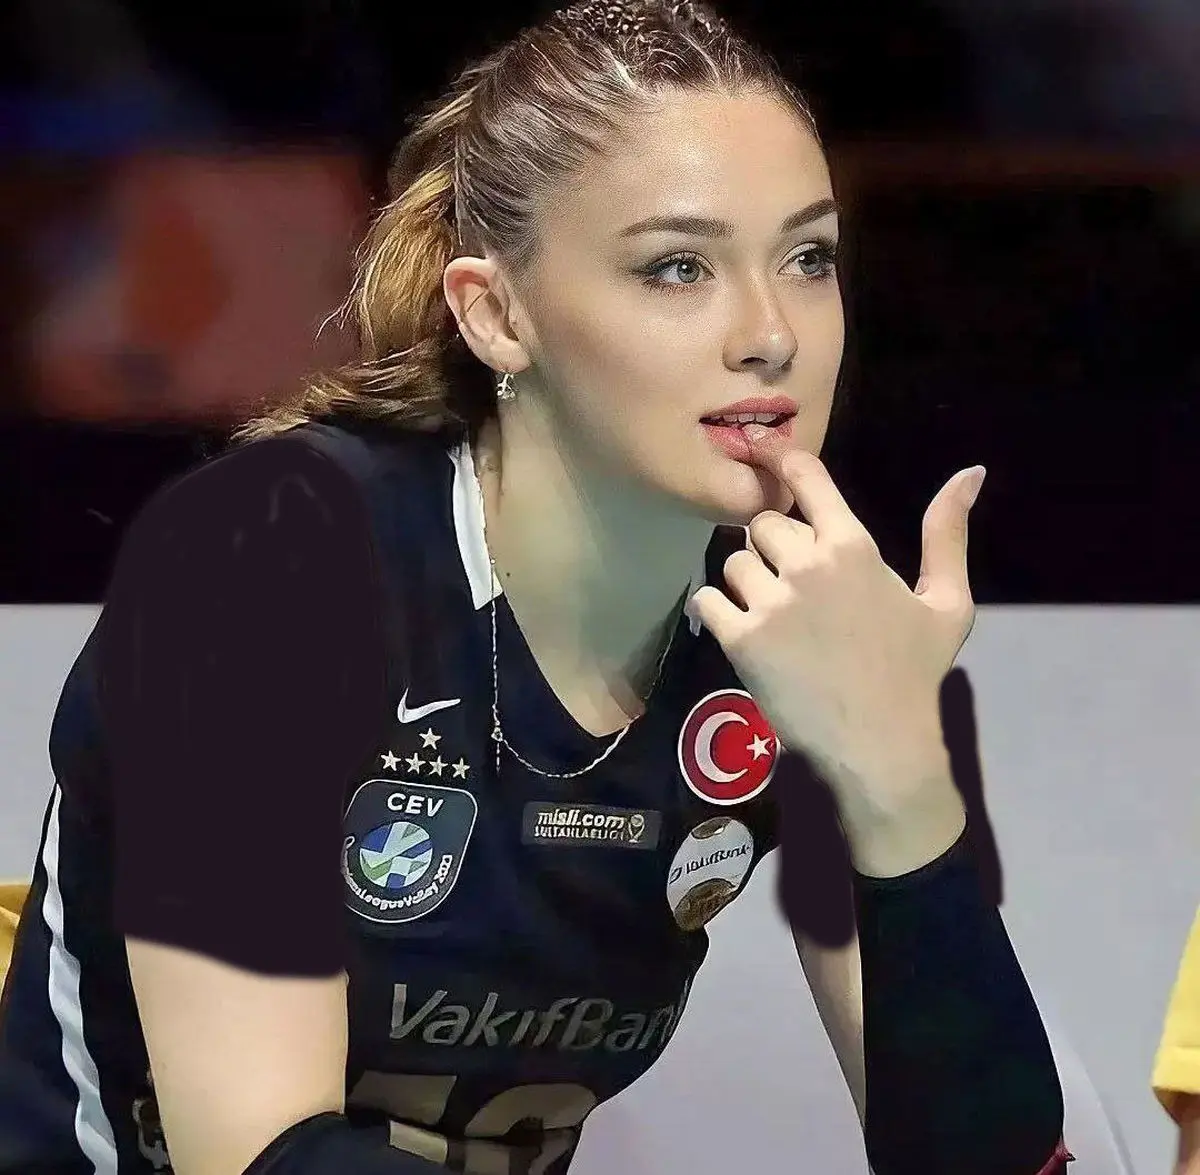 خوشگذرانی زهرا گونش ستاره قدبلند تیم ملی والیبال ترکیه در کافه لاکچری مرسدس بنز در آلمان به صرف شیر شکلات داغ/ چه وایب رویایی ای داره +تصاویر